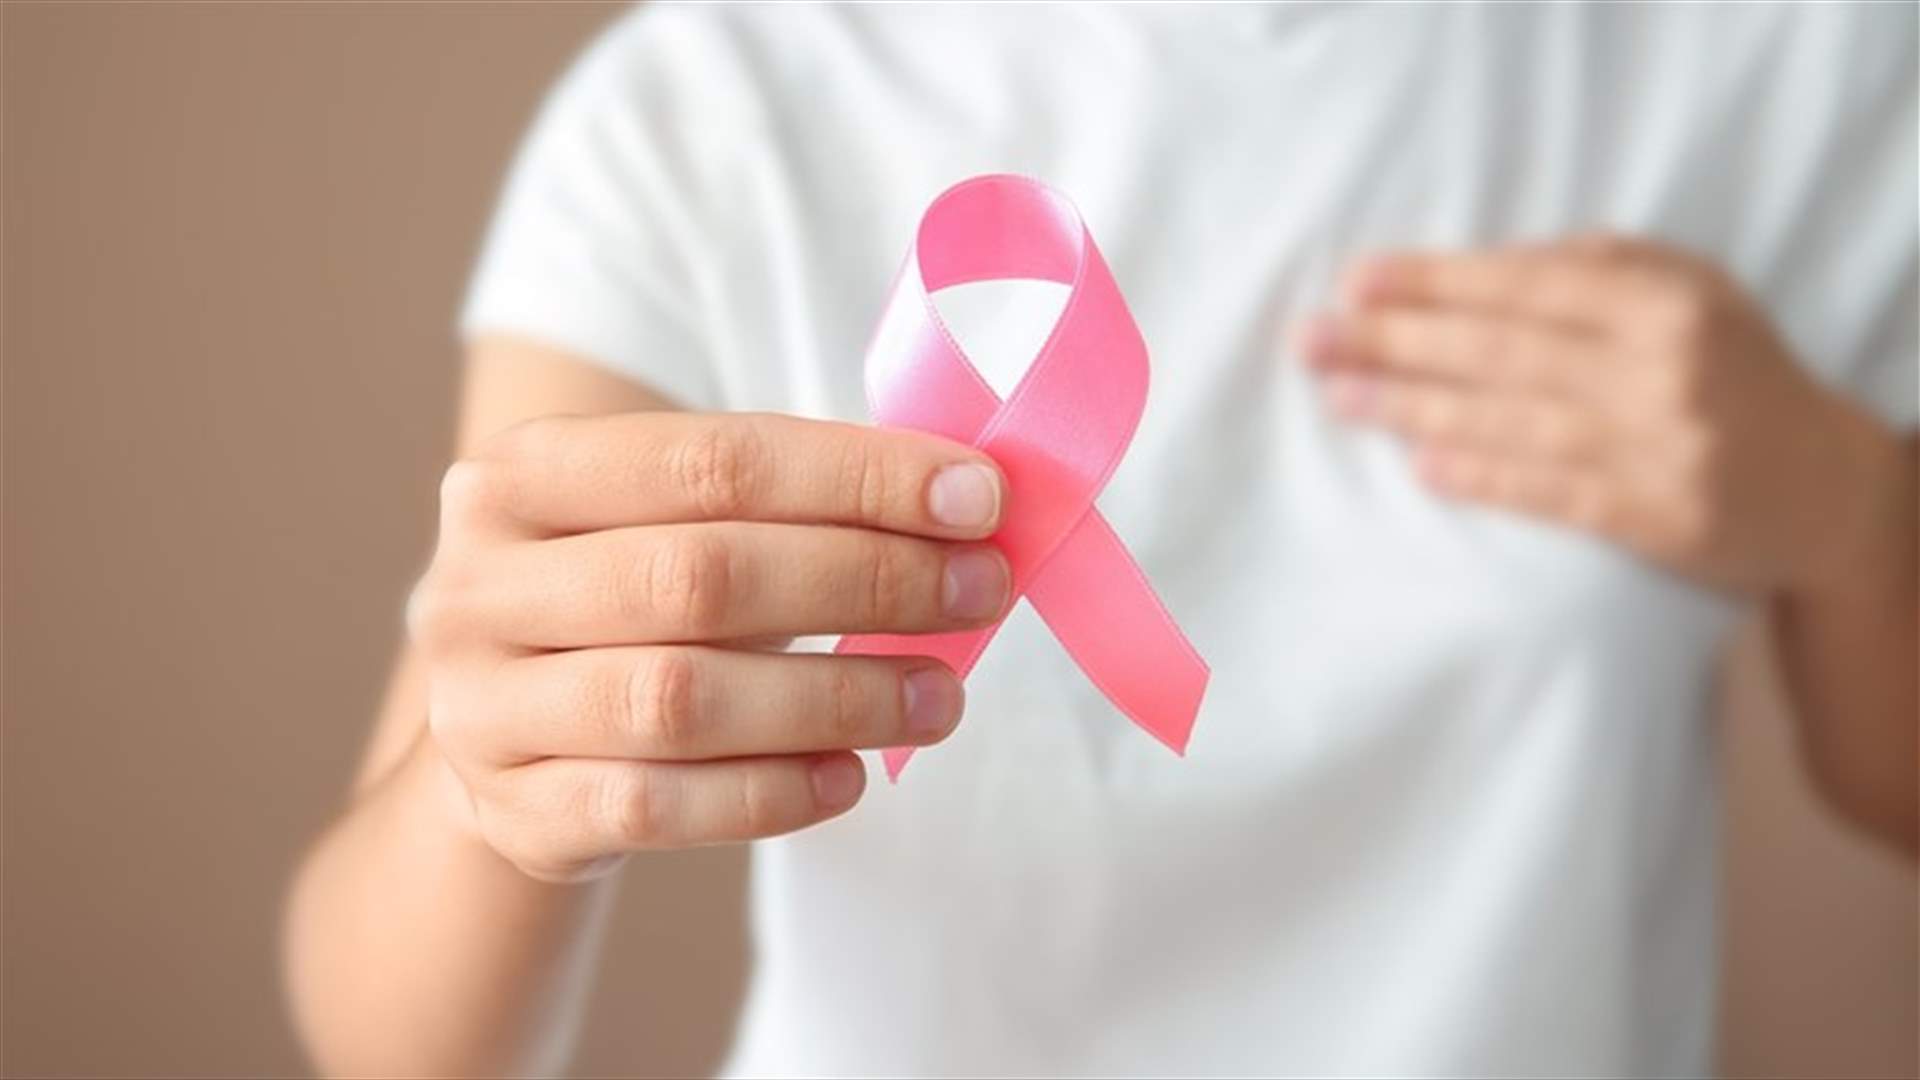 اكتشاف جديد قد يكون مفتاحًا لعلاج سرطان الثدي